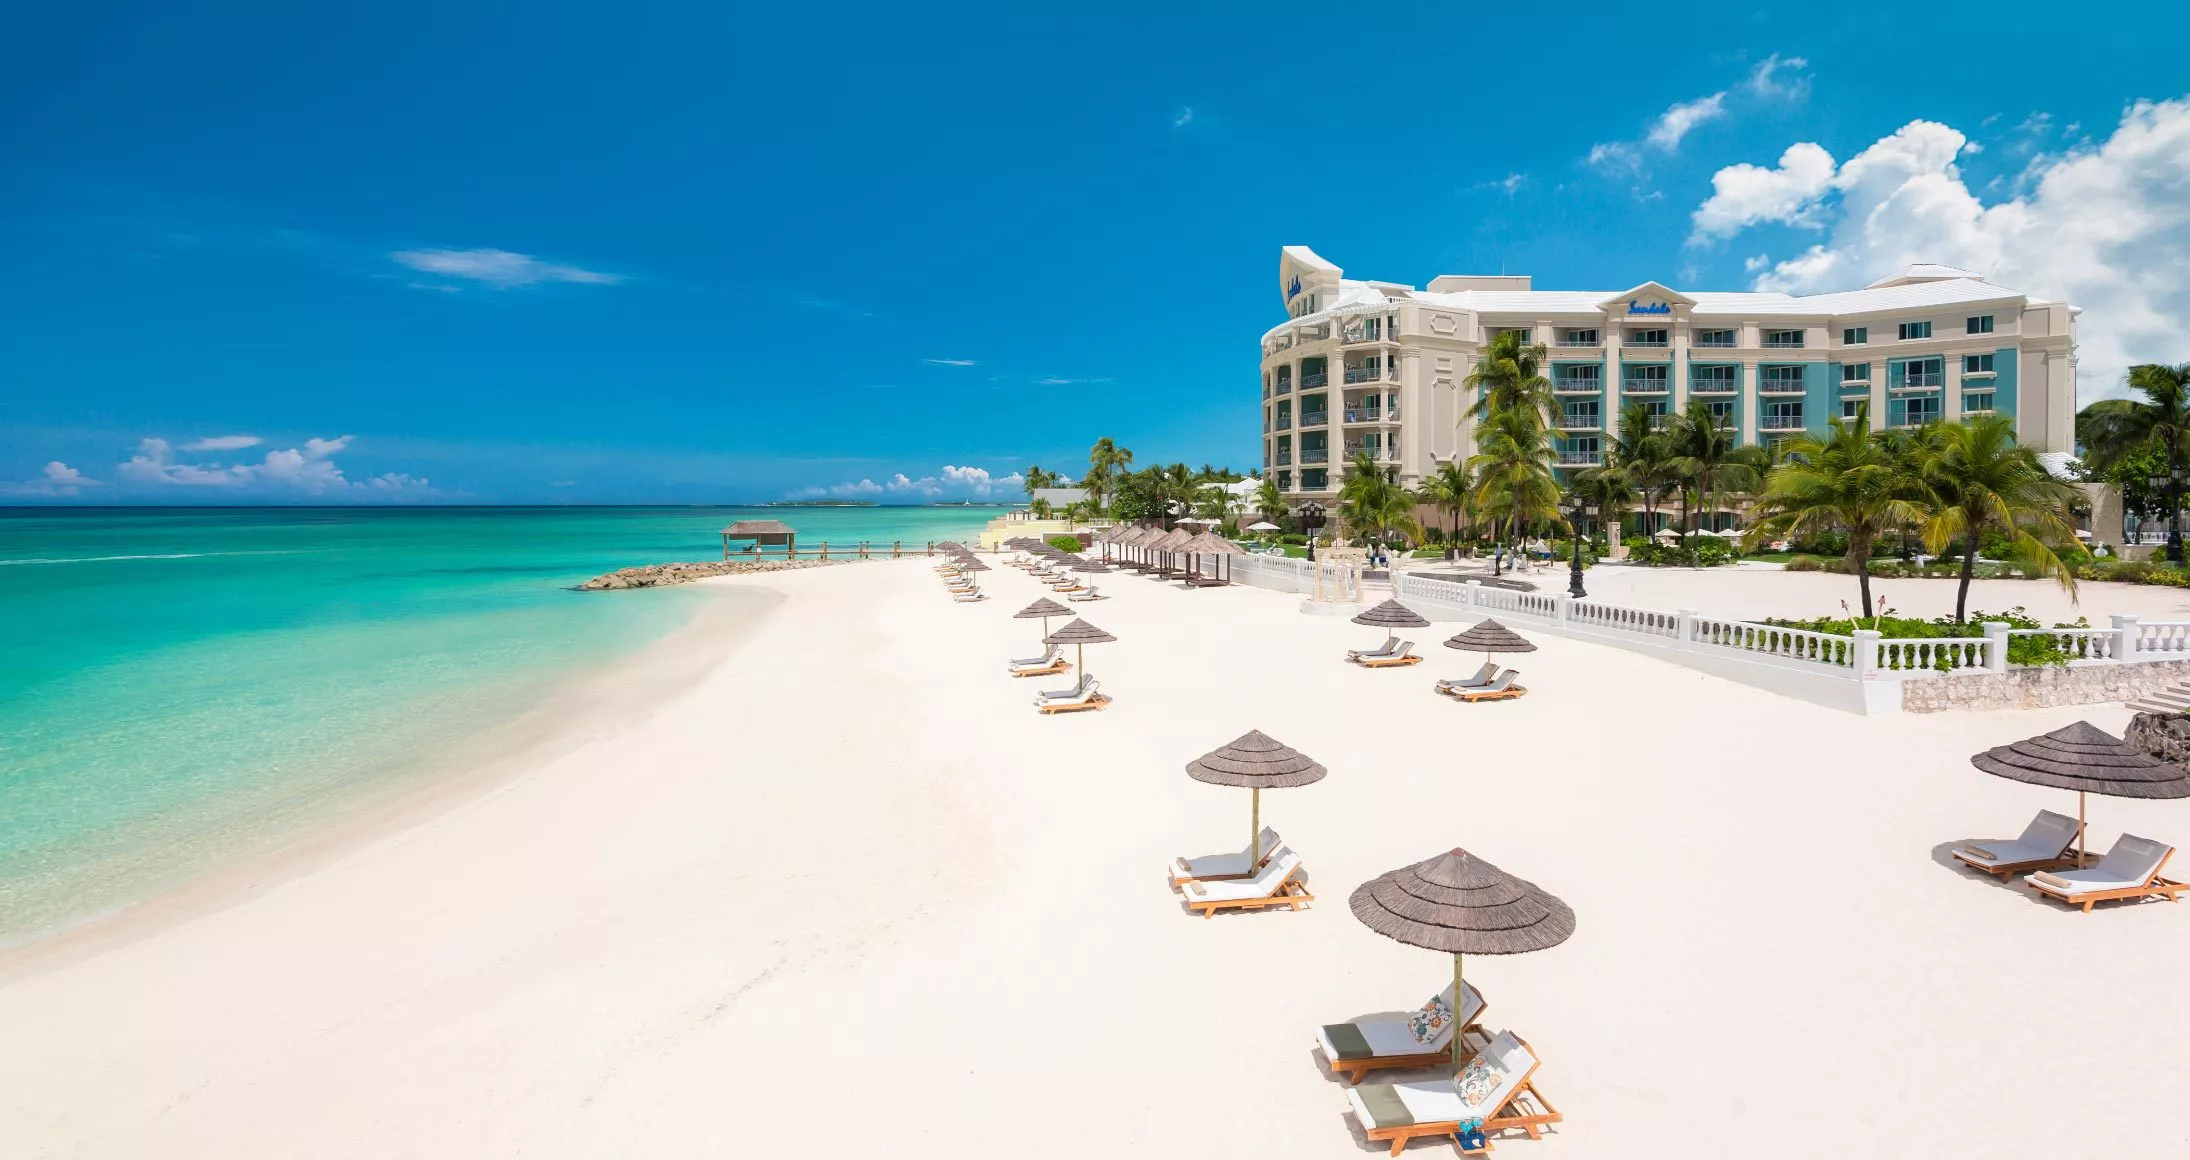 Sandals Royal Bahamian in Bahamas, Caribbean | Sex Hotels - Rated 3.4